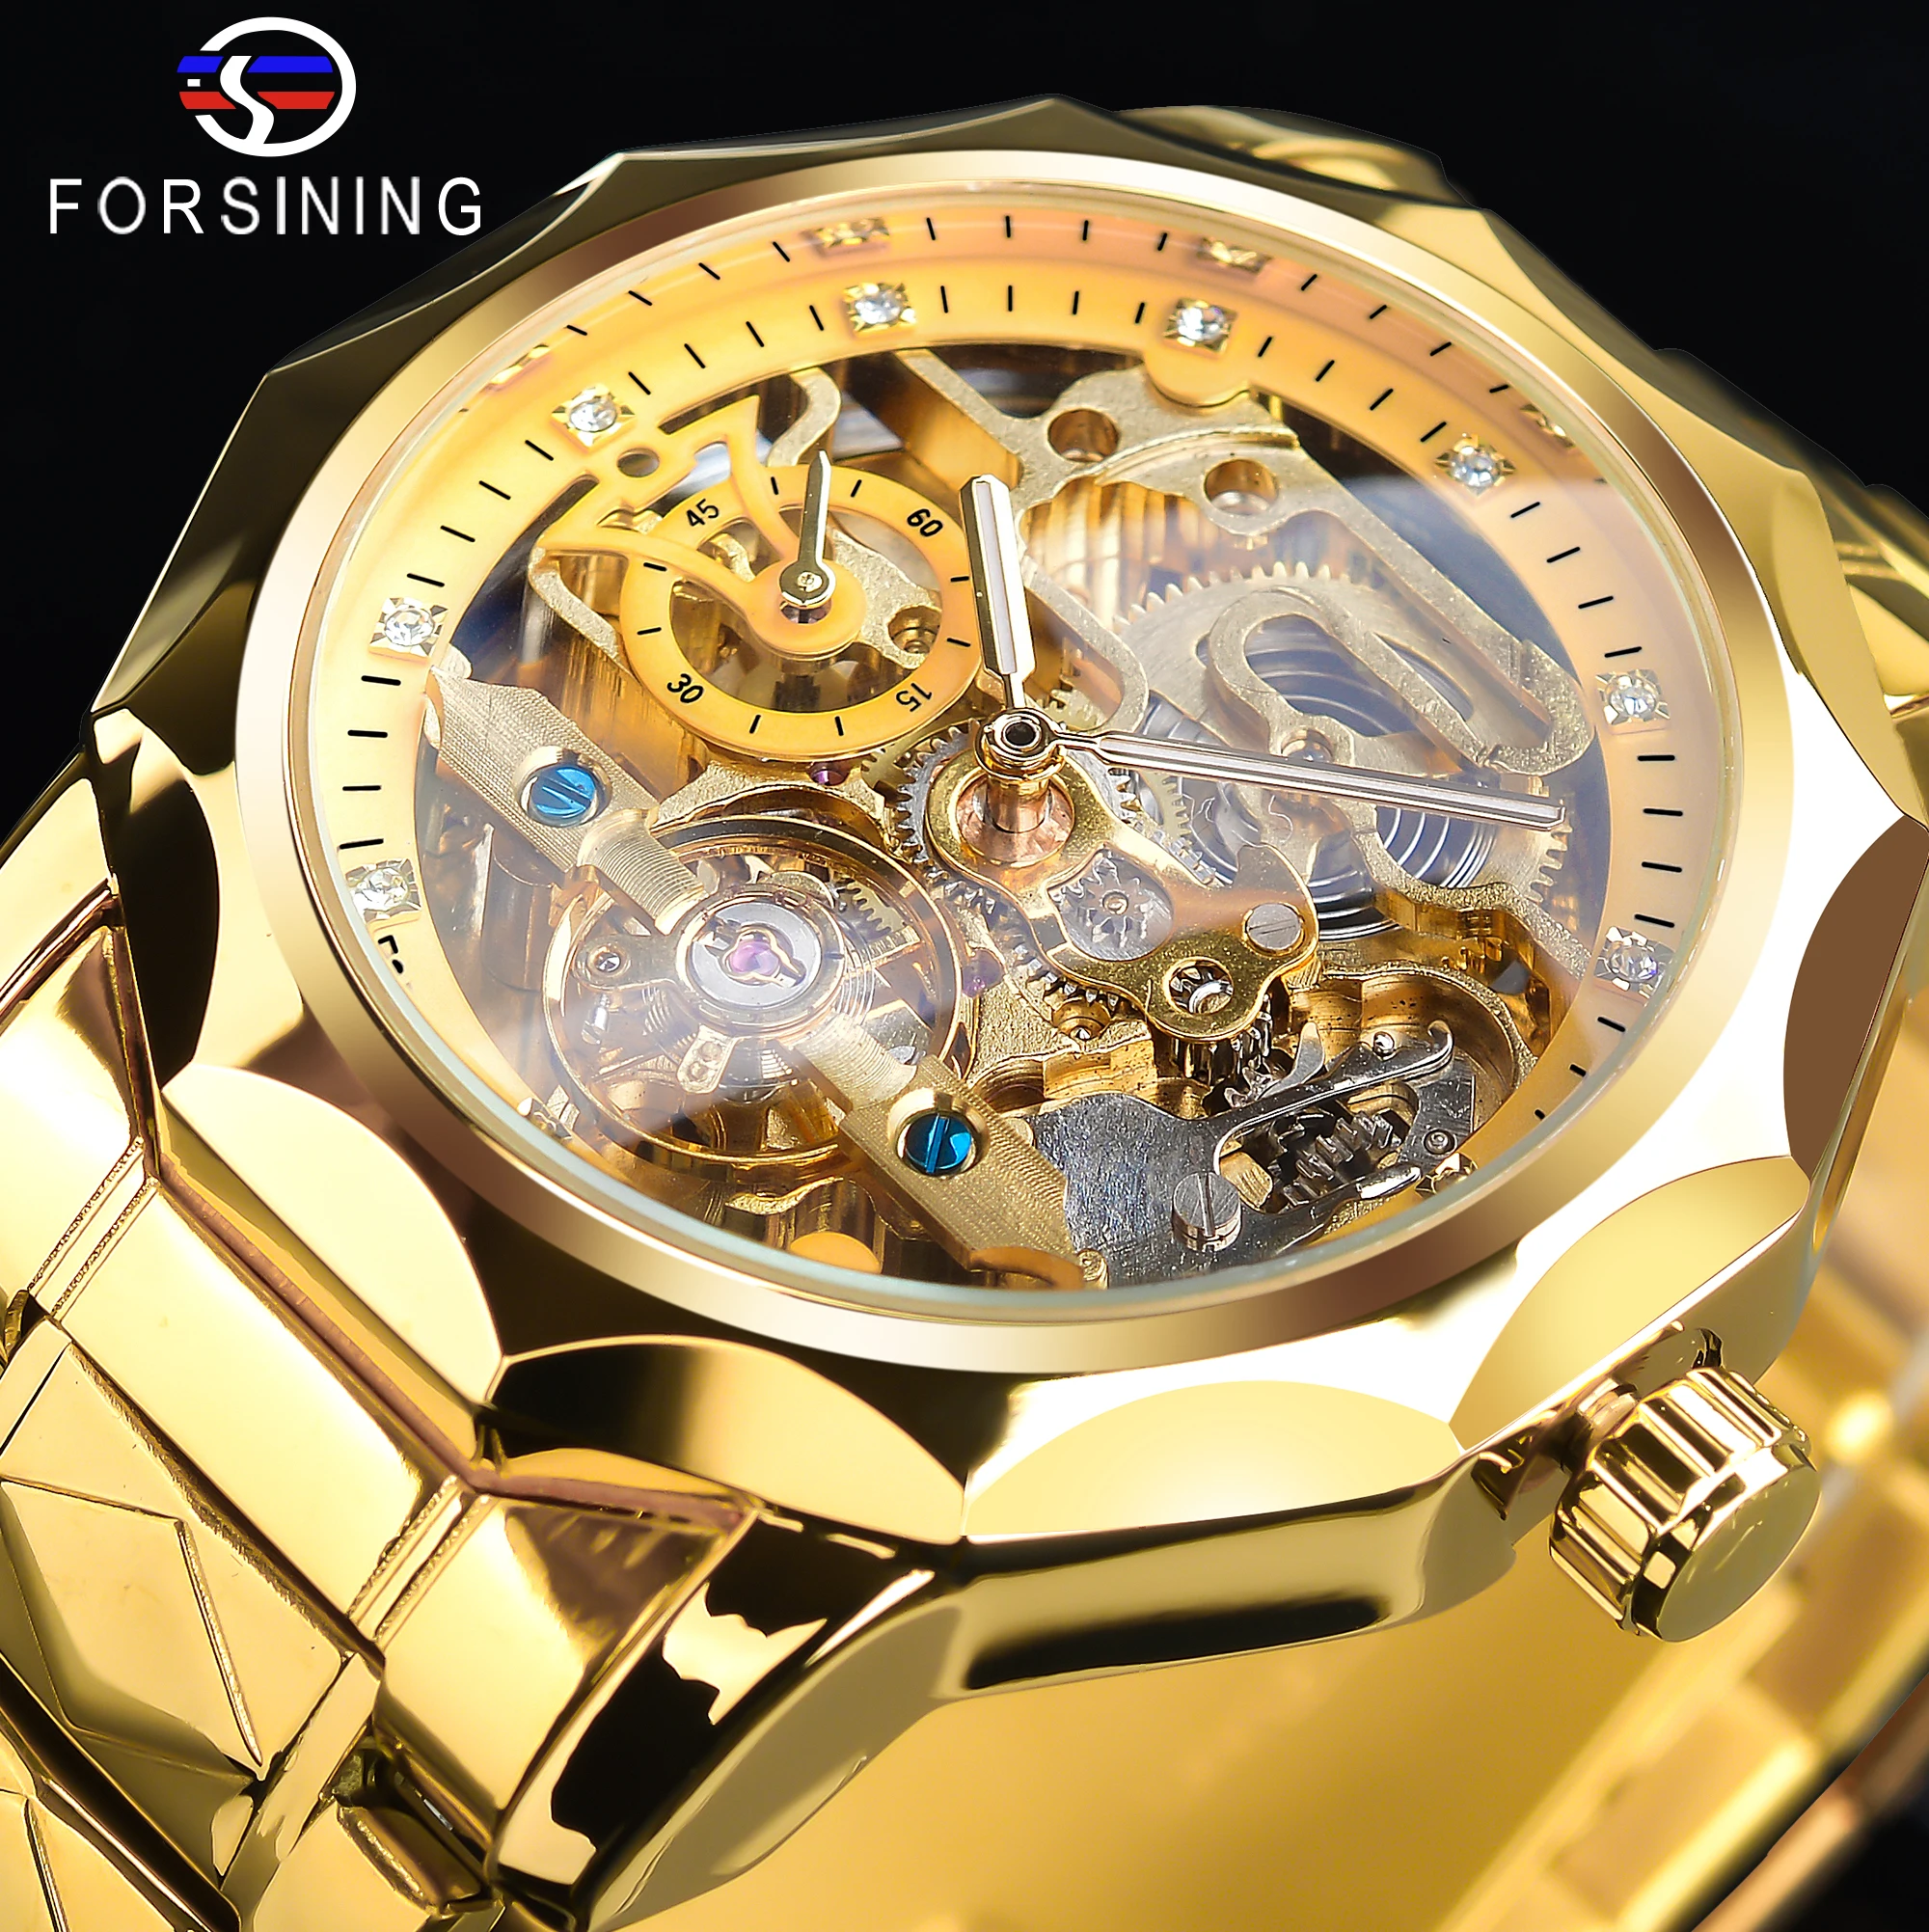 Relógios de pulso mecânico  Forsining Ouro Relógio de Pulso Automático Masculino Esqueleto Relógio Mecânico Luxo Tourbillon Design Relógio Masculino Aço Inoxidável